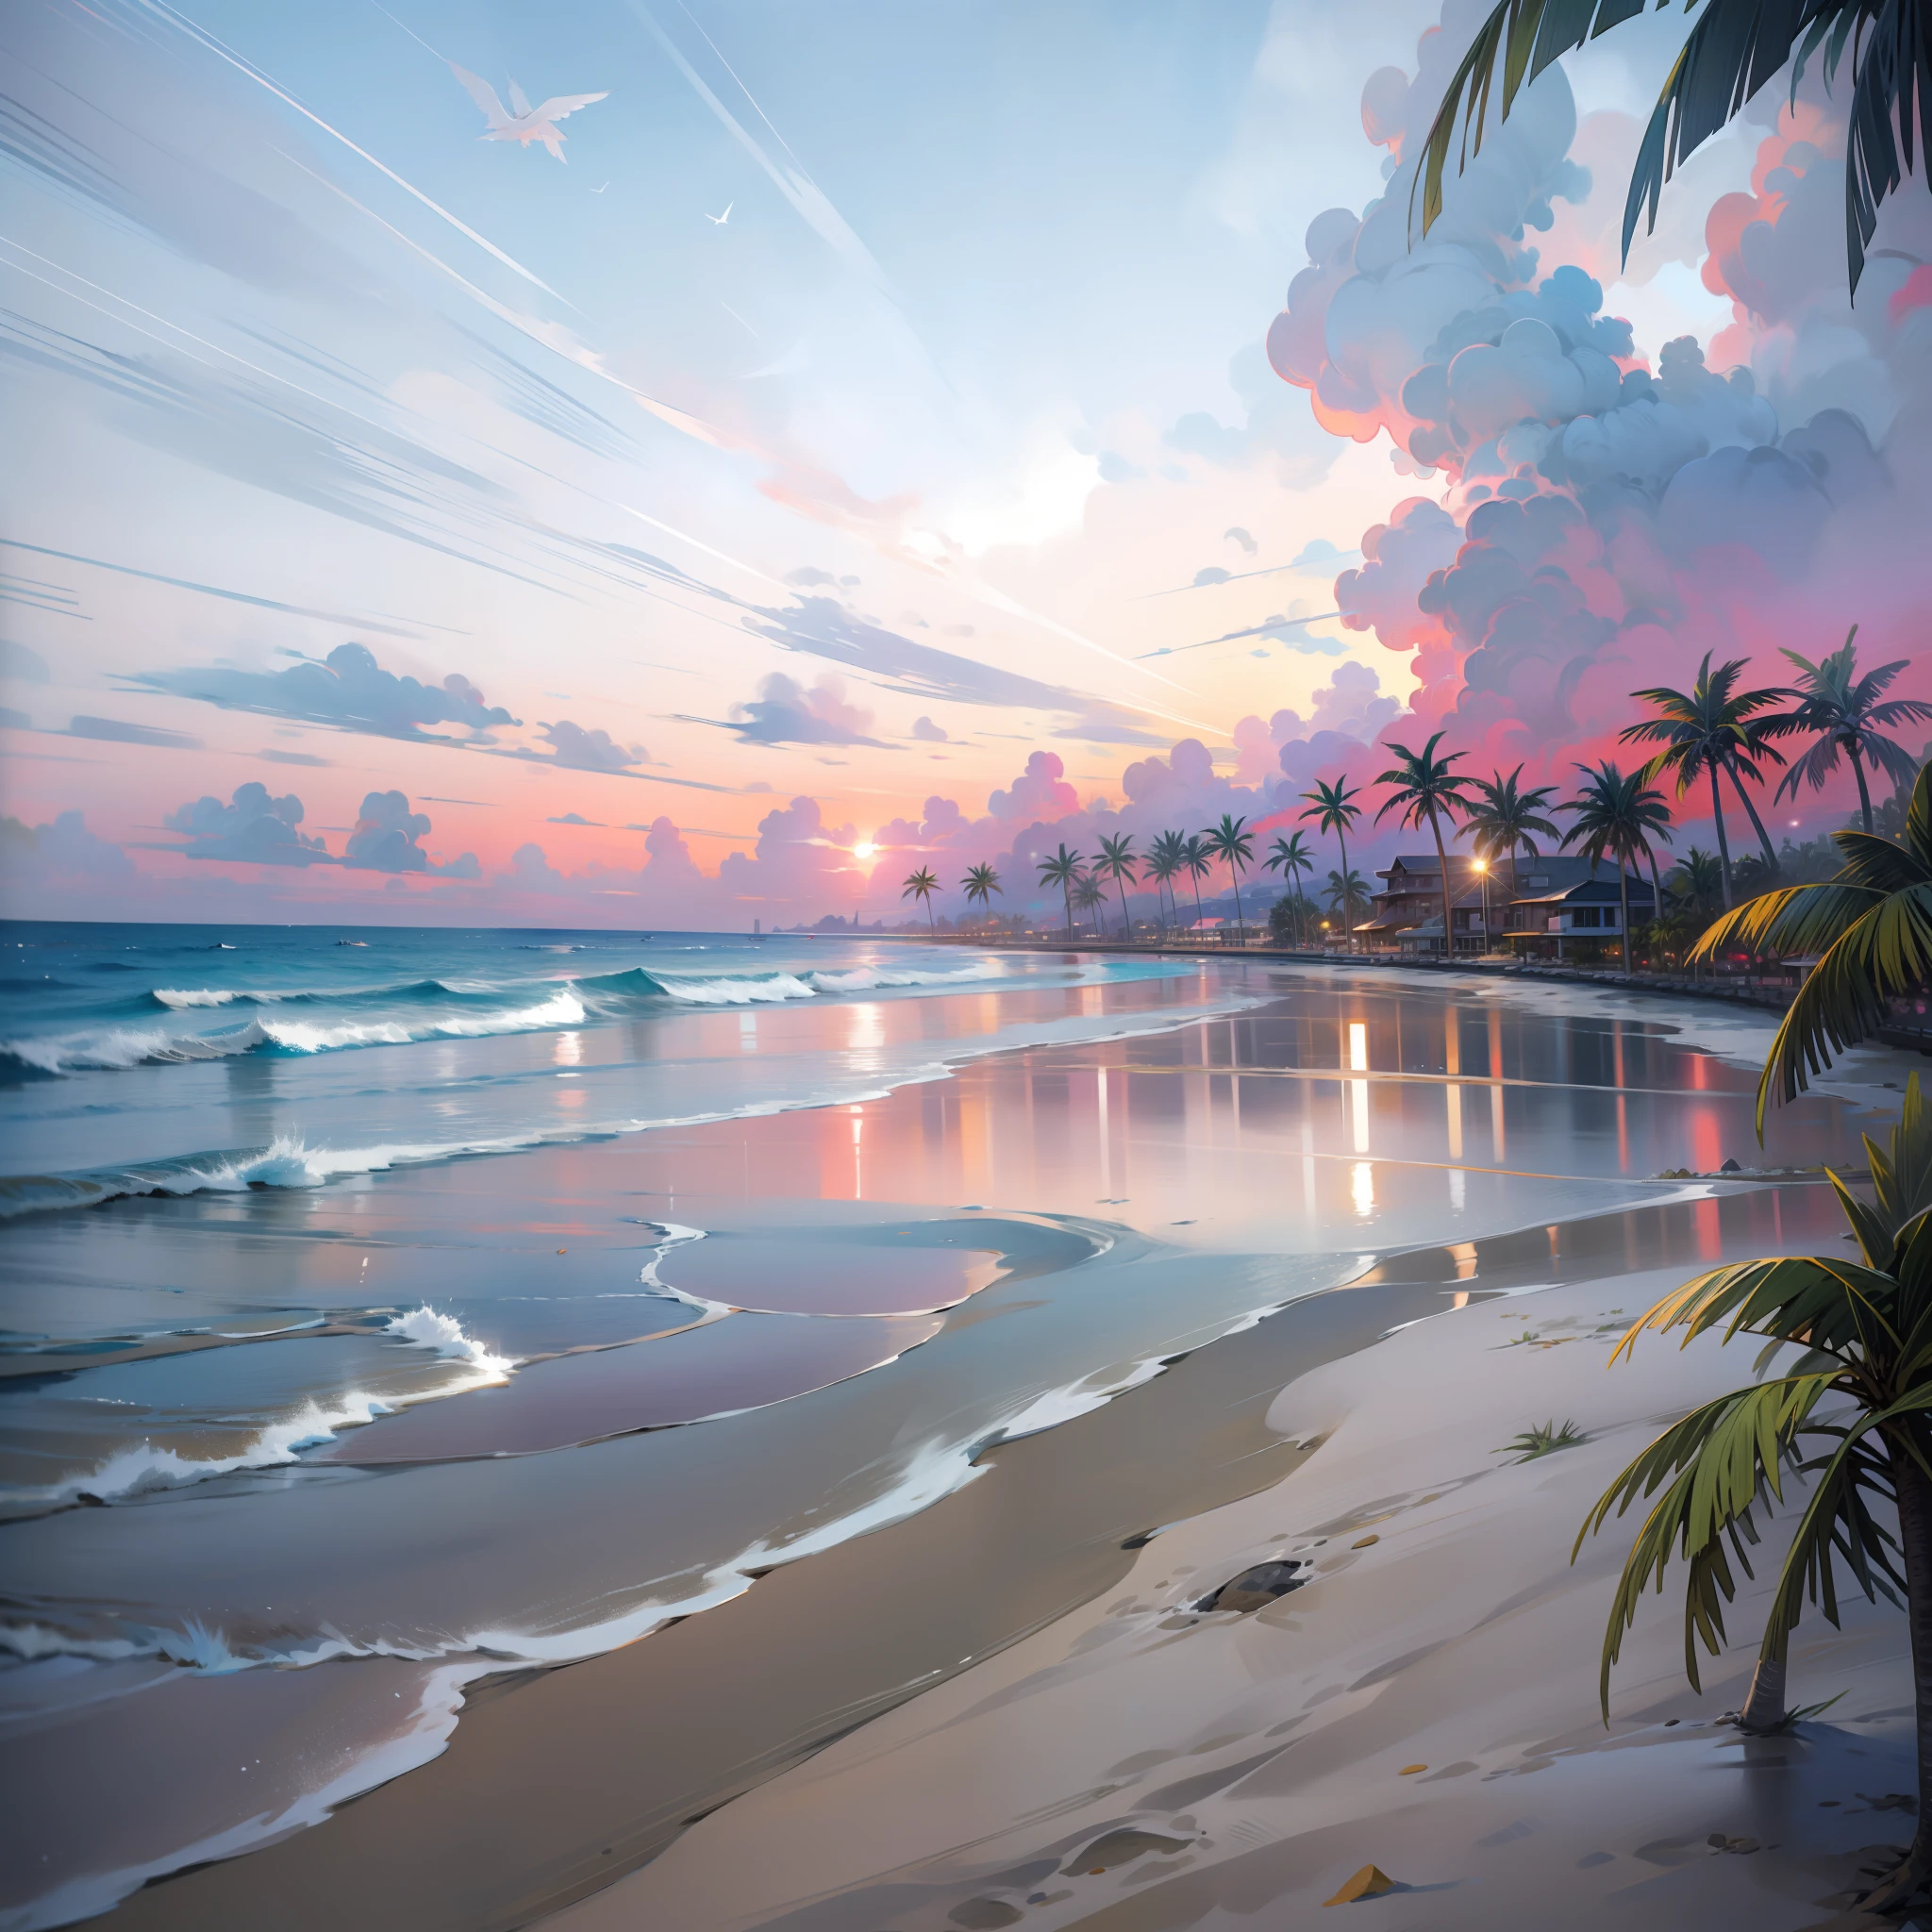 Ein absolut faszinierender Sonnenuntergang am Strand mit einer Mischung aus Orange, Rosa und Gelb am Himmel. Das Wasser ist kristallklar, sanft das Ufer küssen, und der weiße Sandstrand erstreckt sich so weit das Auge reicht. Die Szene ist dynamisch und atemberaubend, mit Möwen hoch am Himmel und Palmen, die sanft schwanken. Genießen Sie die ruhige Atmosphäre und lassen Sie die Ruhe einhüllen.